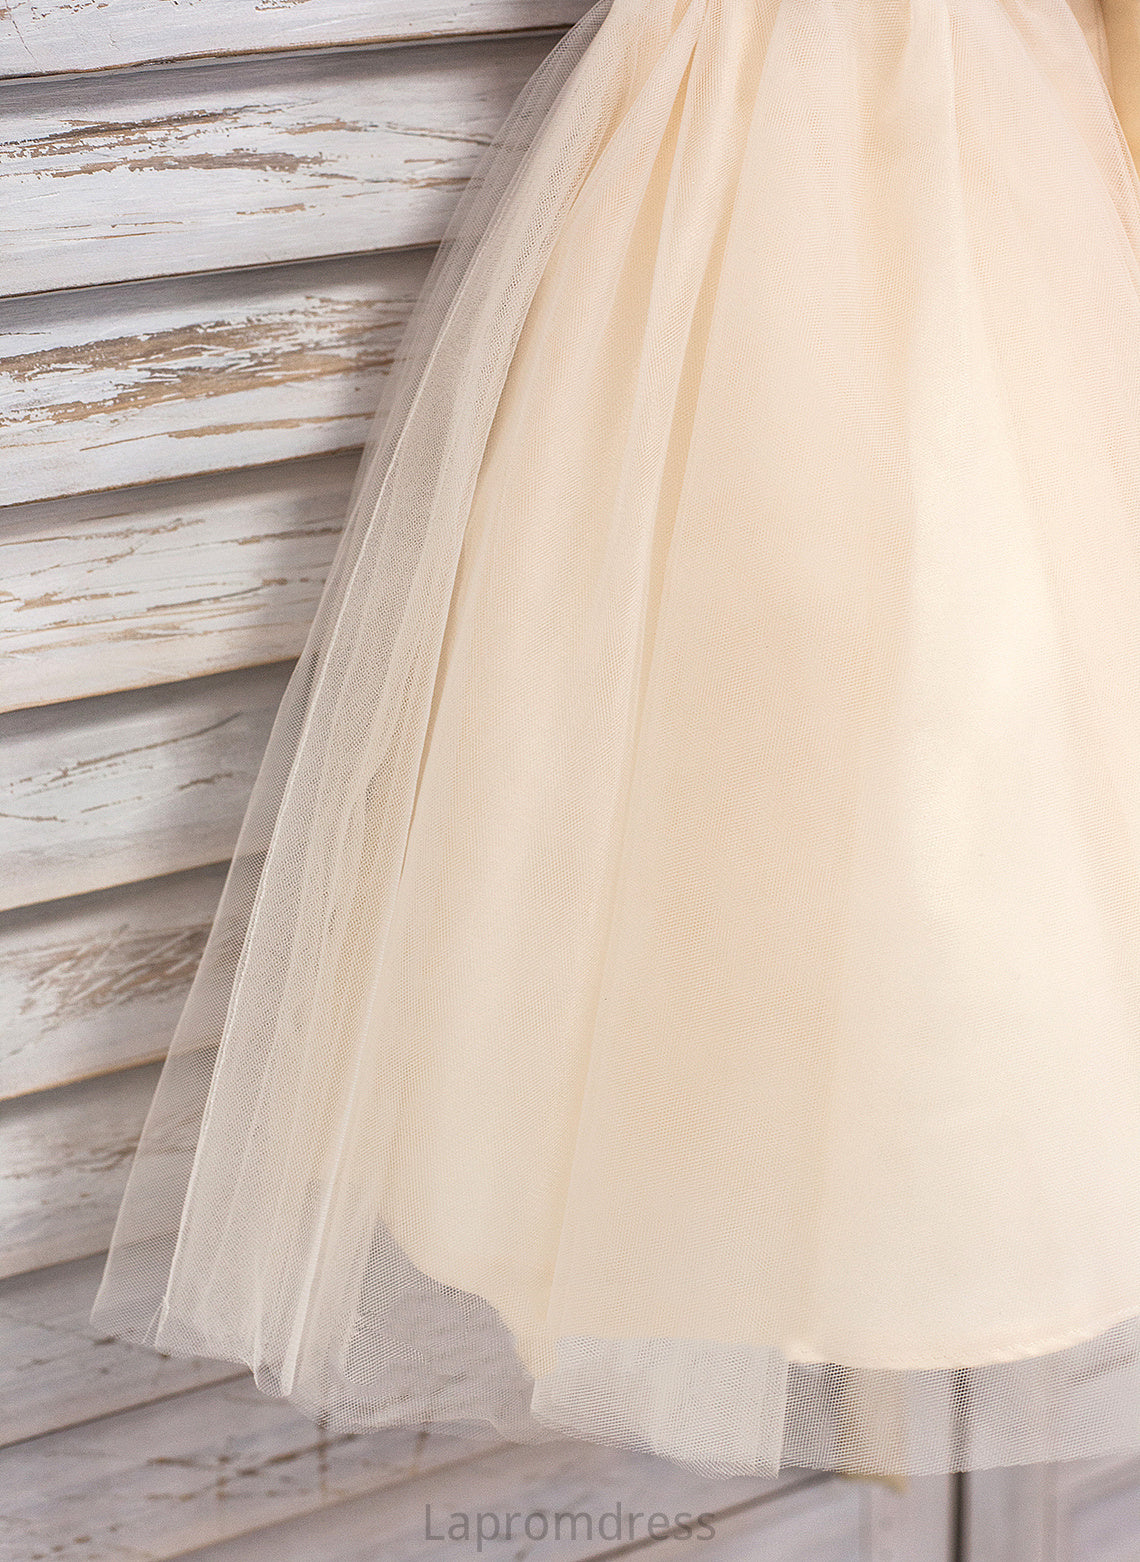 A-Line Neck Yasmine Sleeveless With Flower Sash Knee-length - Dress Flower Girl Dresses Girl Scoop Tulle/Sequined